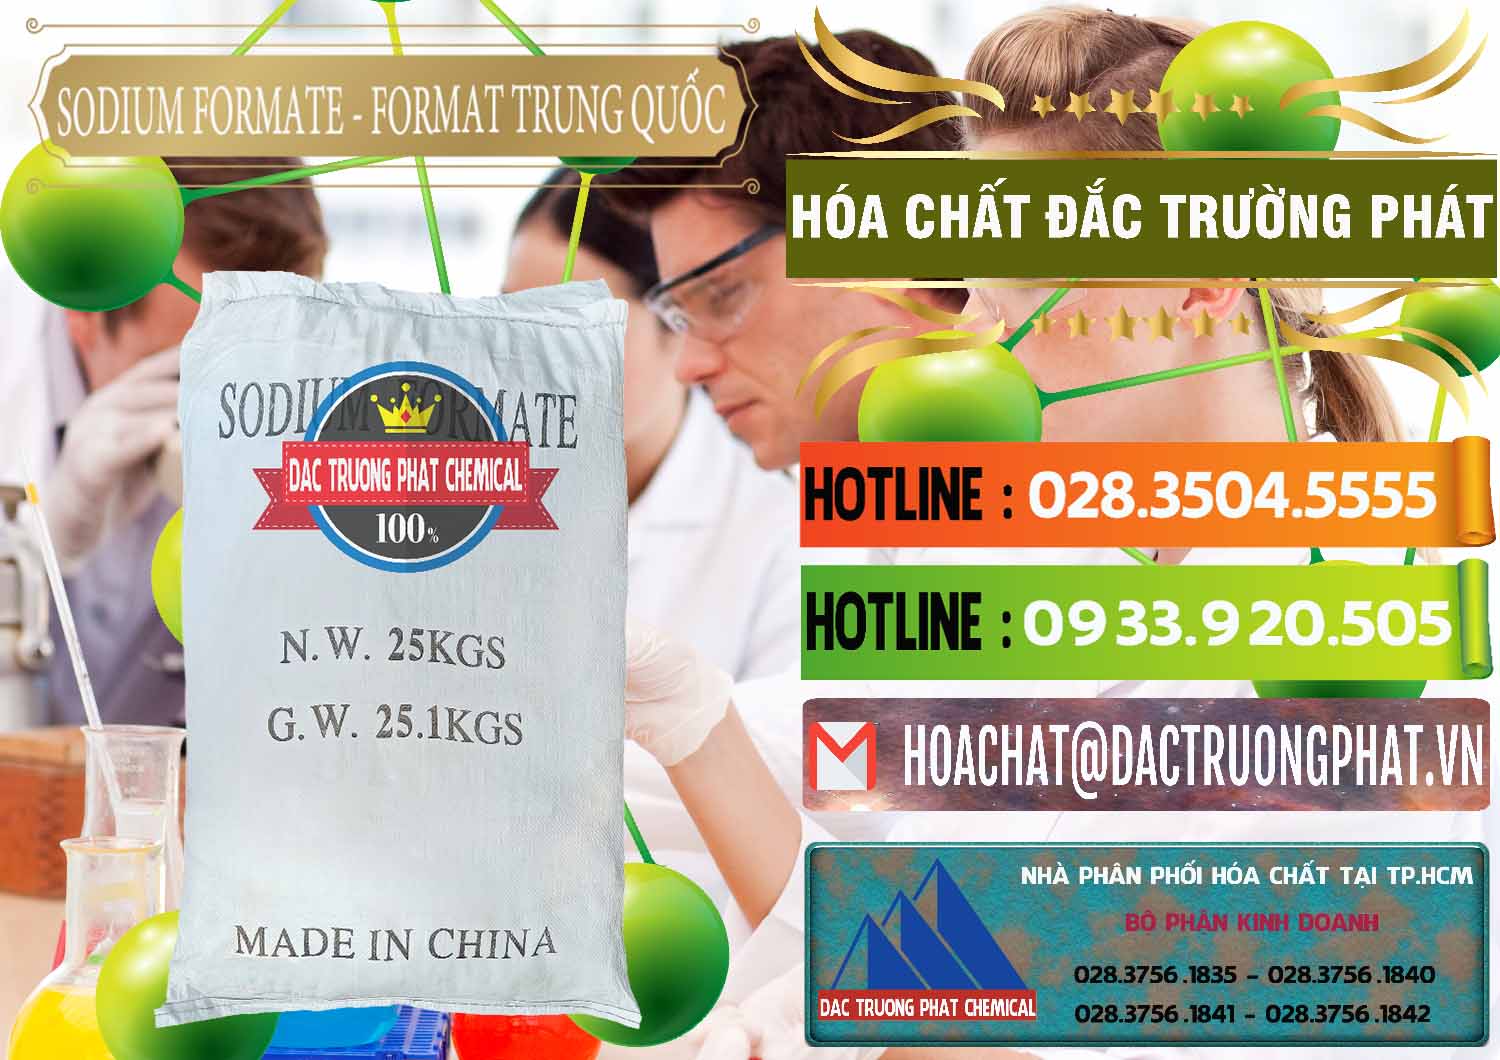 Chuyên cung cấp _ bán Sodium Formate - Natri Format Trung Quốc China - 0142 - Đơn vị bán và phân phối hóa chất tại TP.HCM - cungcaphoachat.com.vn